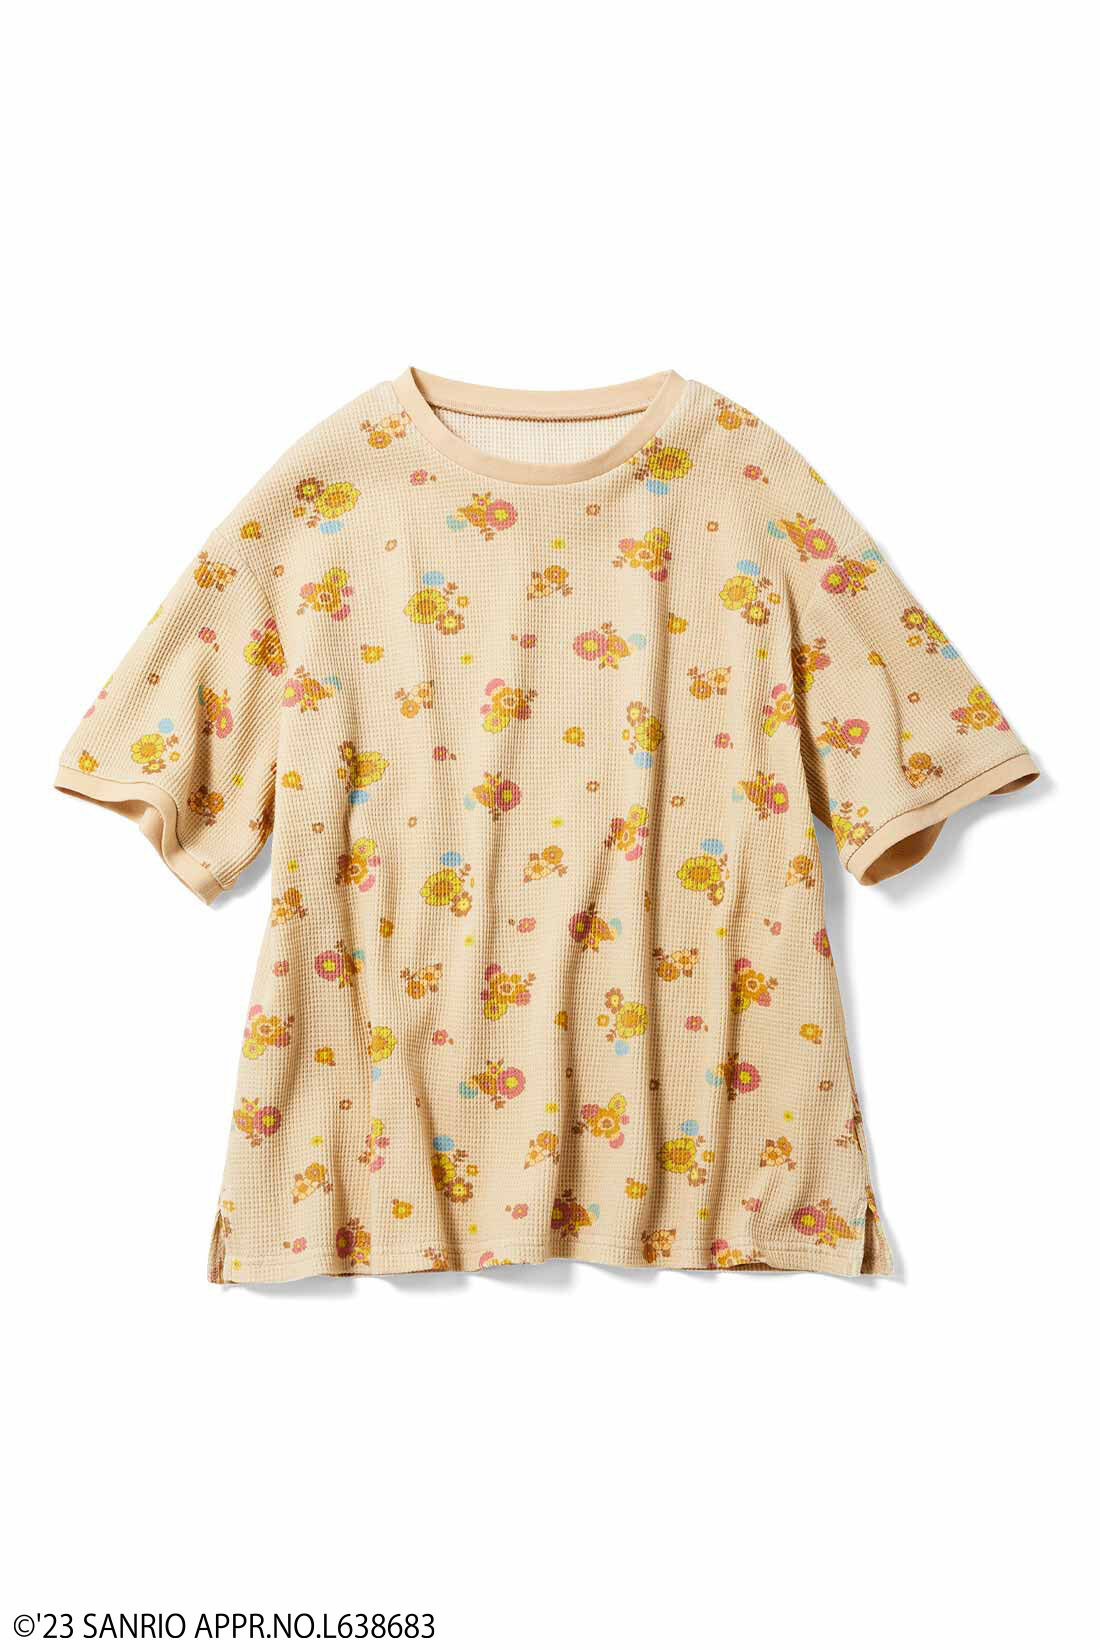 シロップ．|サンリオキャラクターコラボ お花模様のコットンワッフルTシャツの会|ゴロピカドン